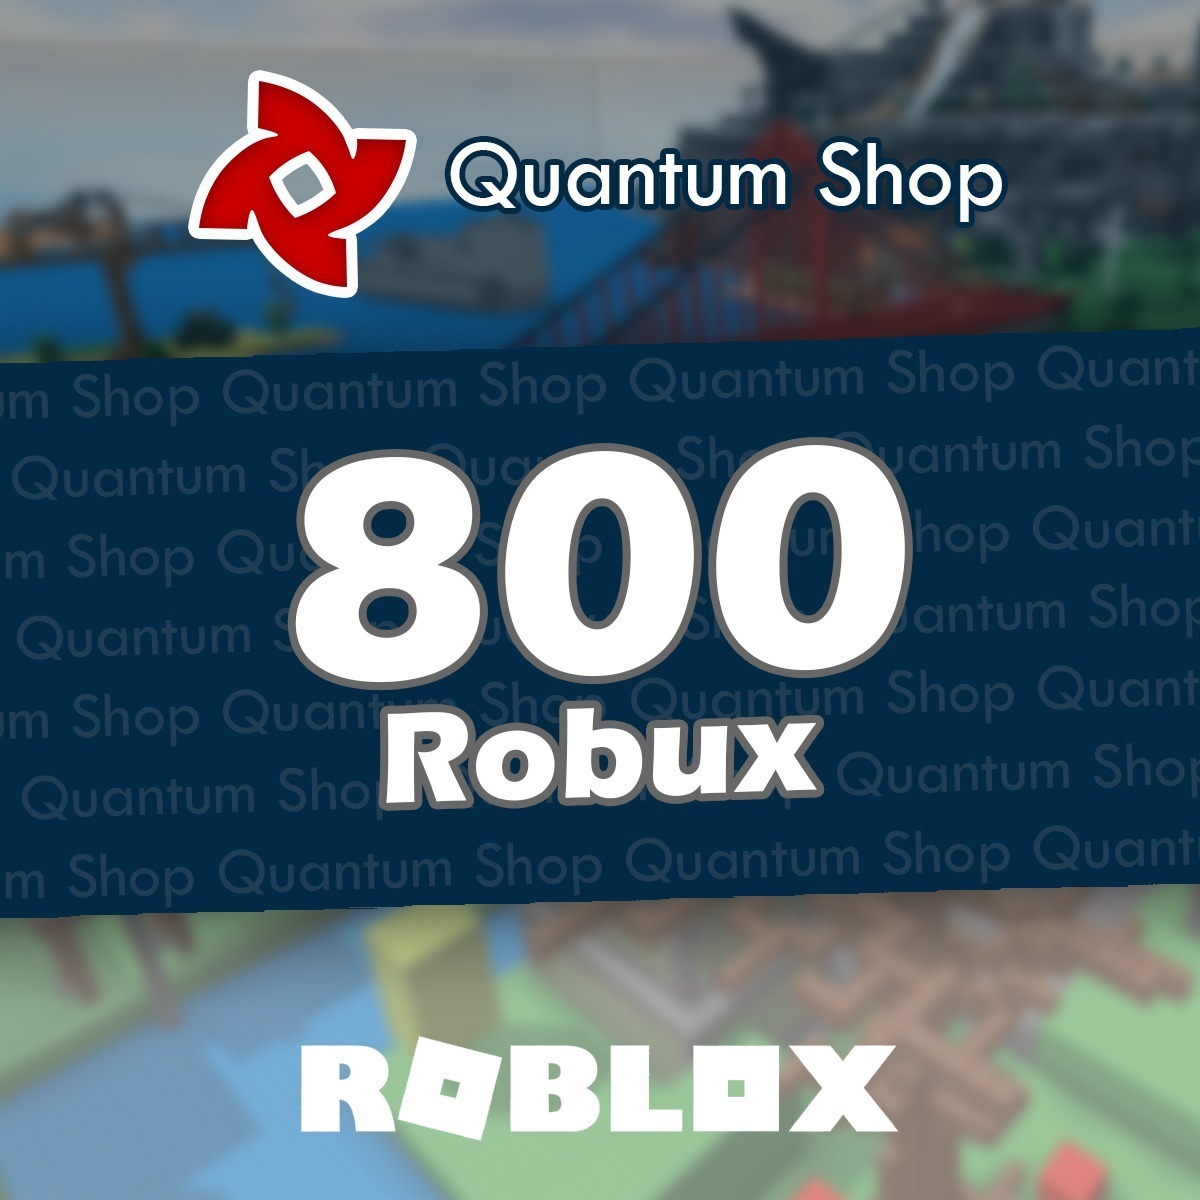 800 Robux Roblox Entrega Inmediata Mercadolider Gold - roblox 2019 08 14 10 55 06